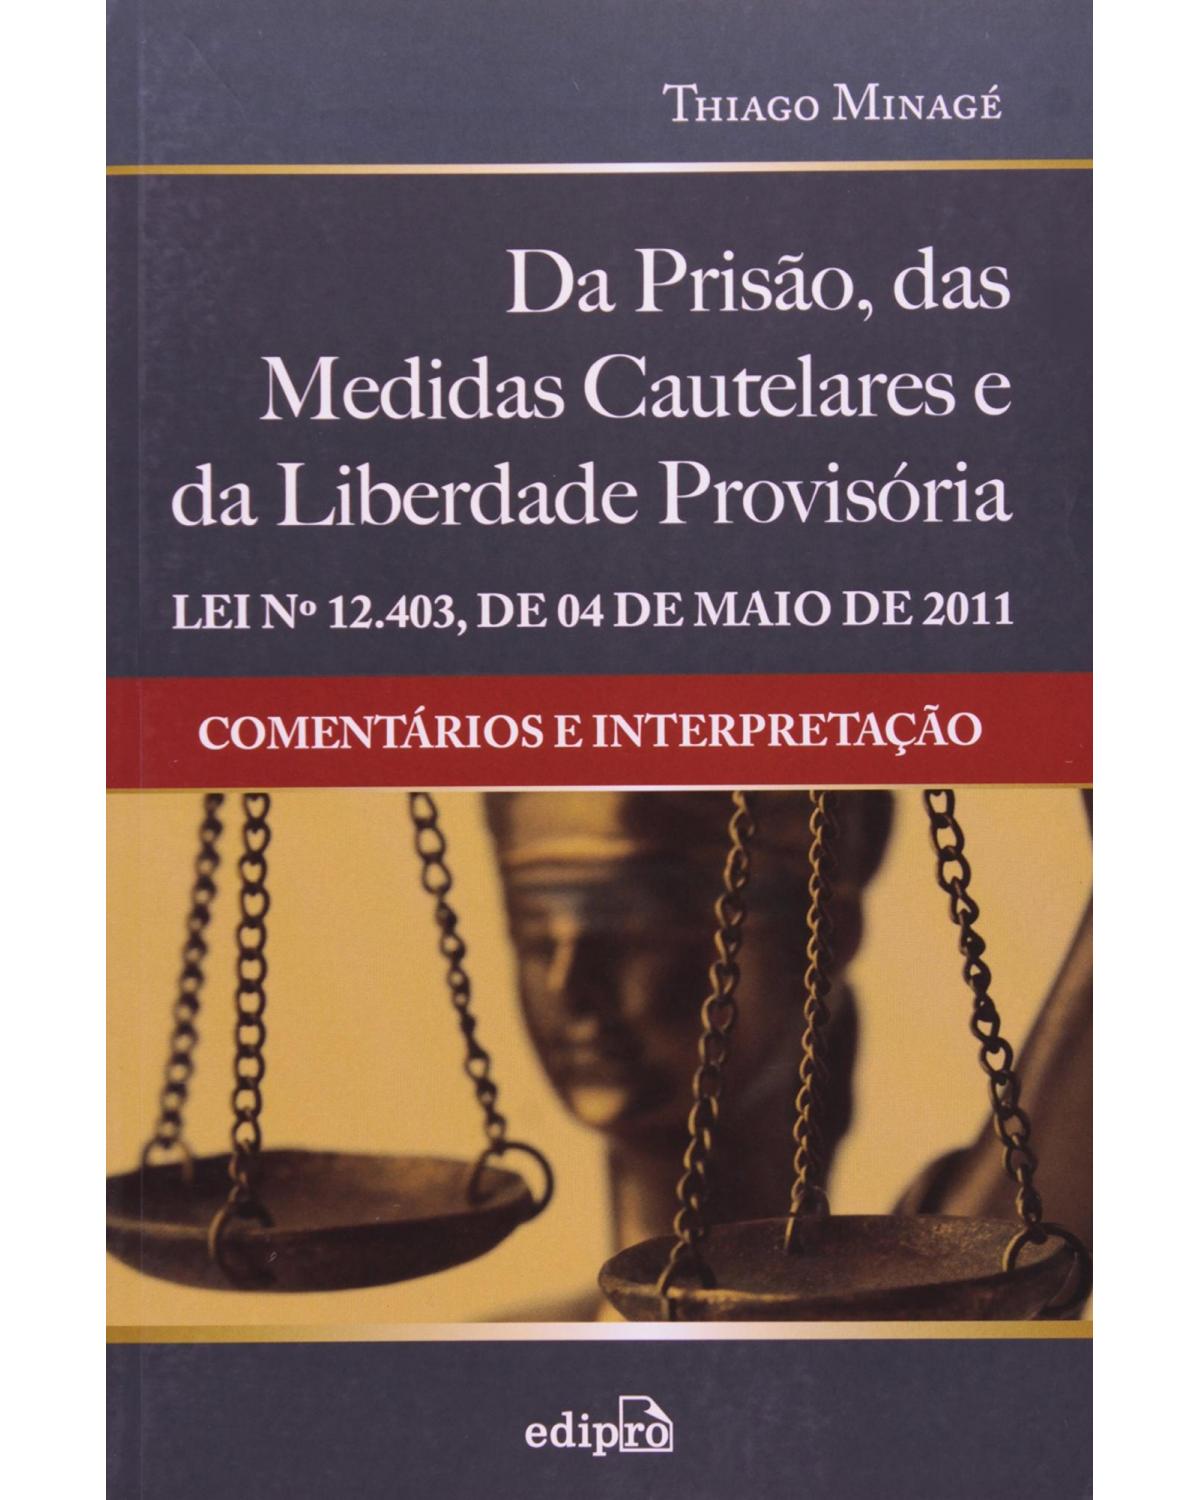 Da prisão, das medidas cautelares e da liberdade provisória: Lei nº 12.403, de 04/05/11 - Comentários e interpretação - 1ª Edição